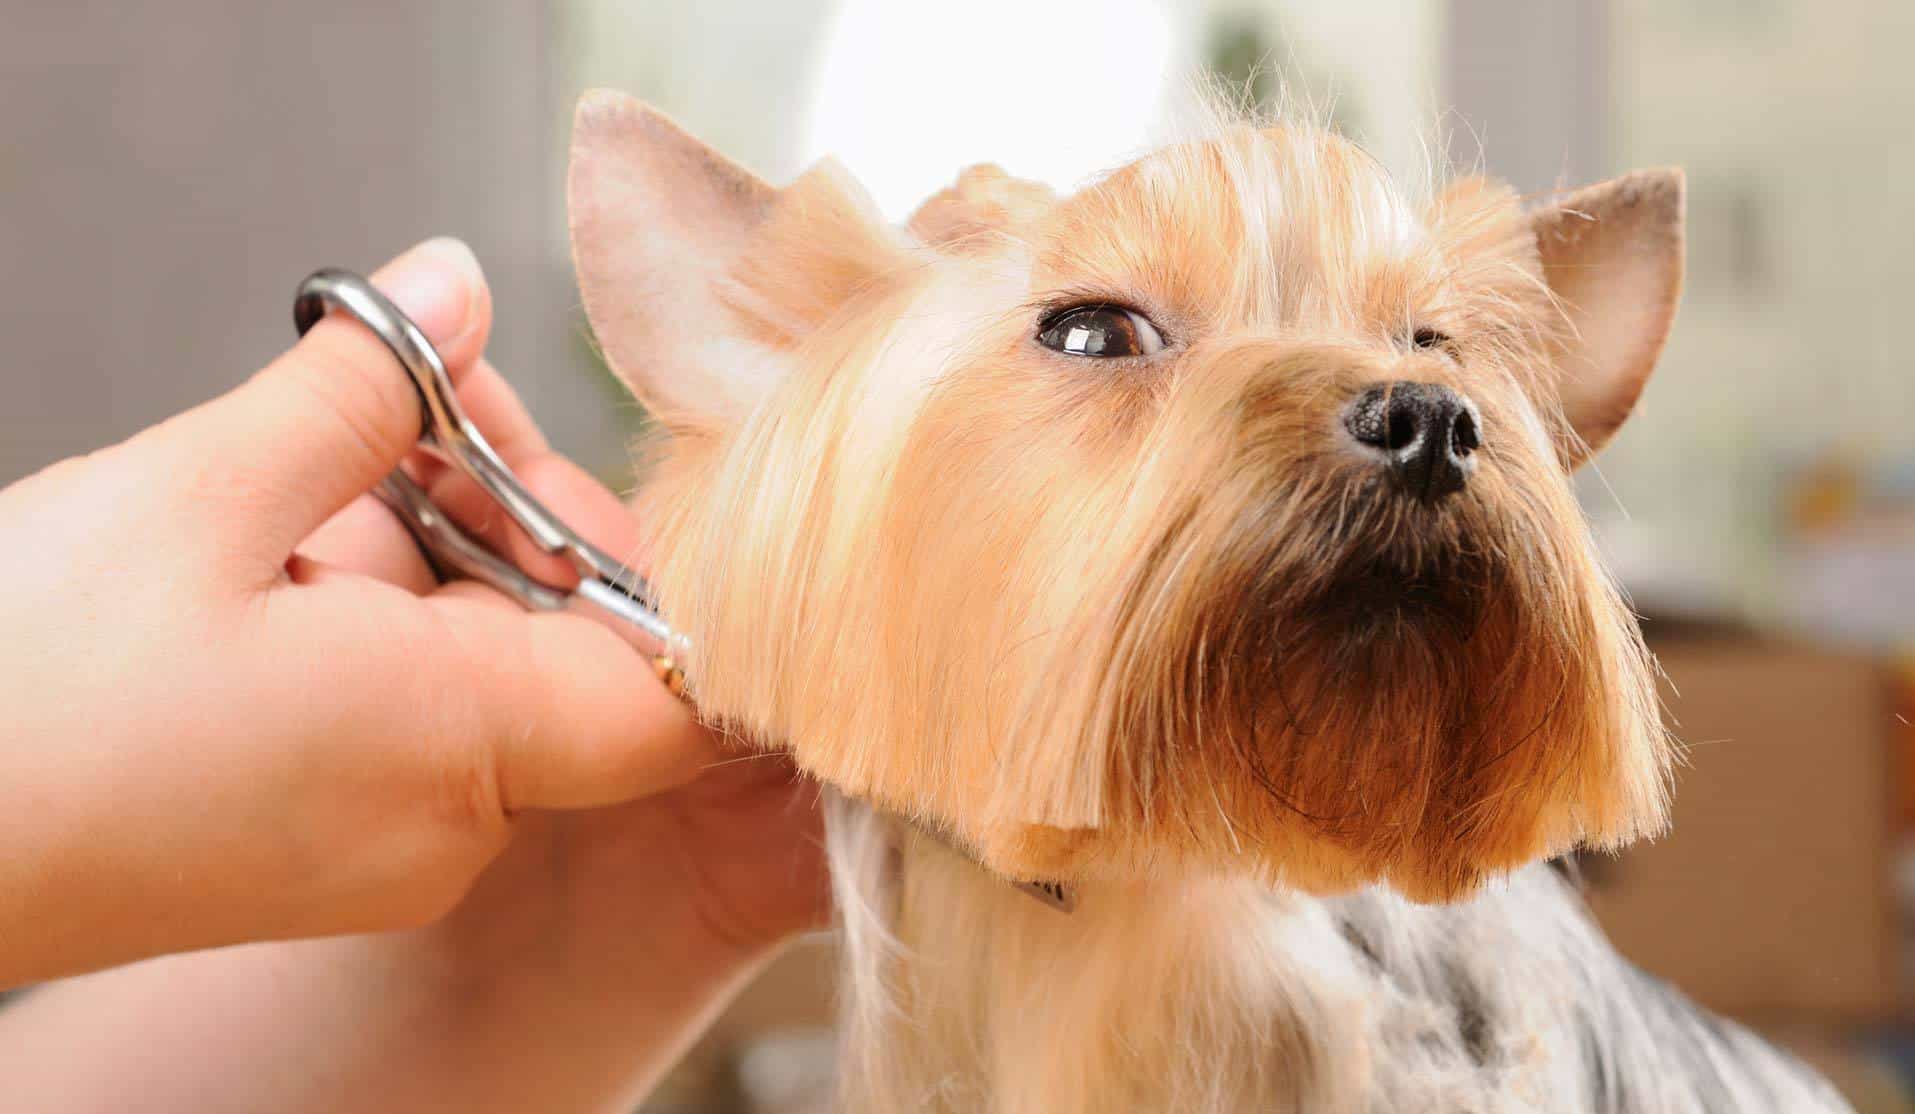 Hãy cẩn thận khi cắt lông cho chó